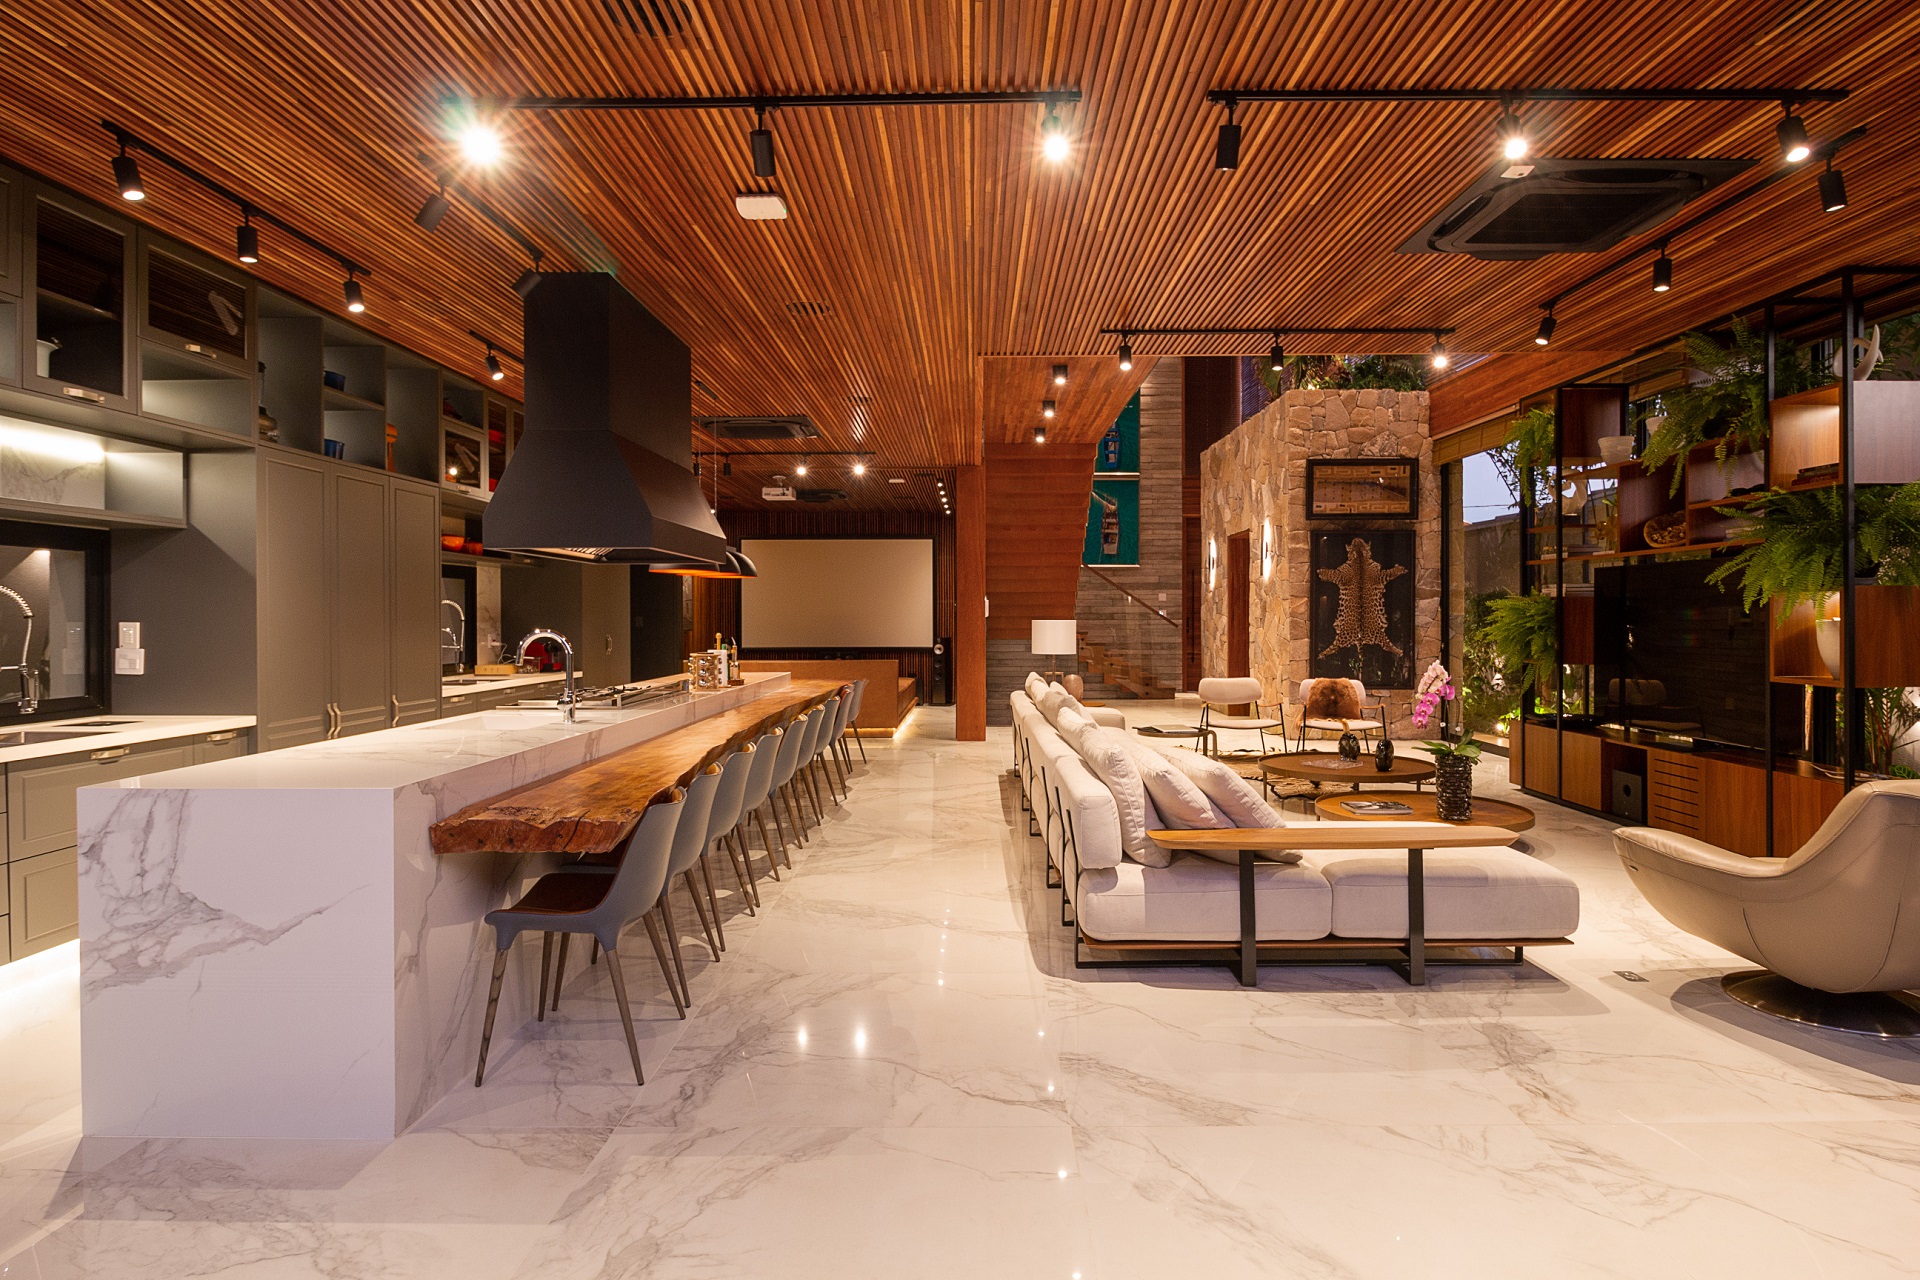 Ambiente amplo com piso de mármore e teto de madeira